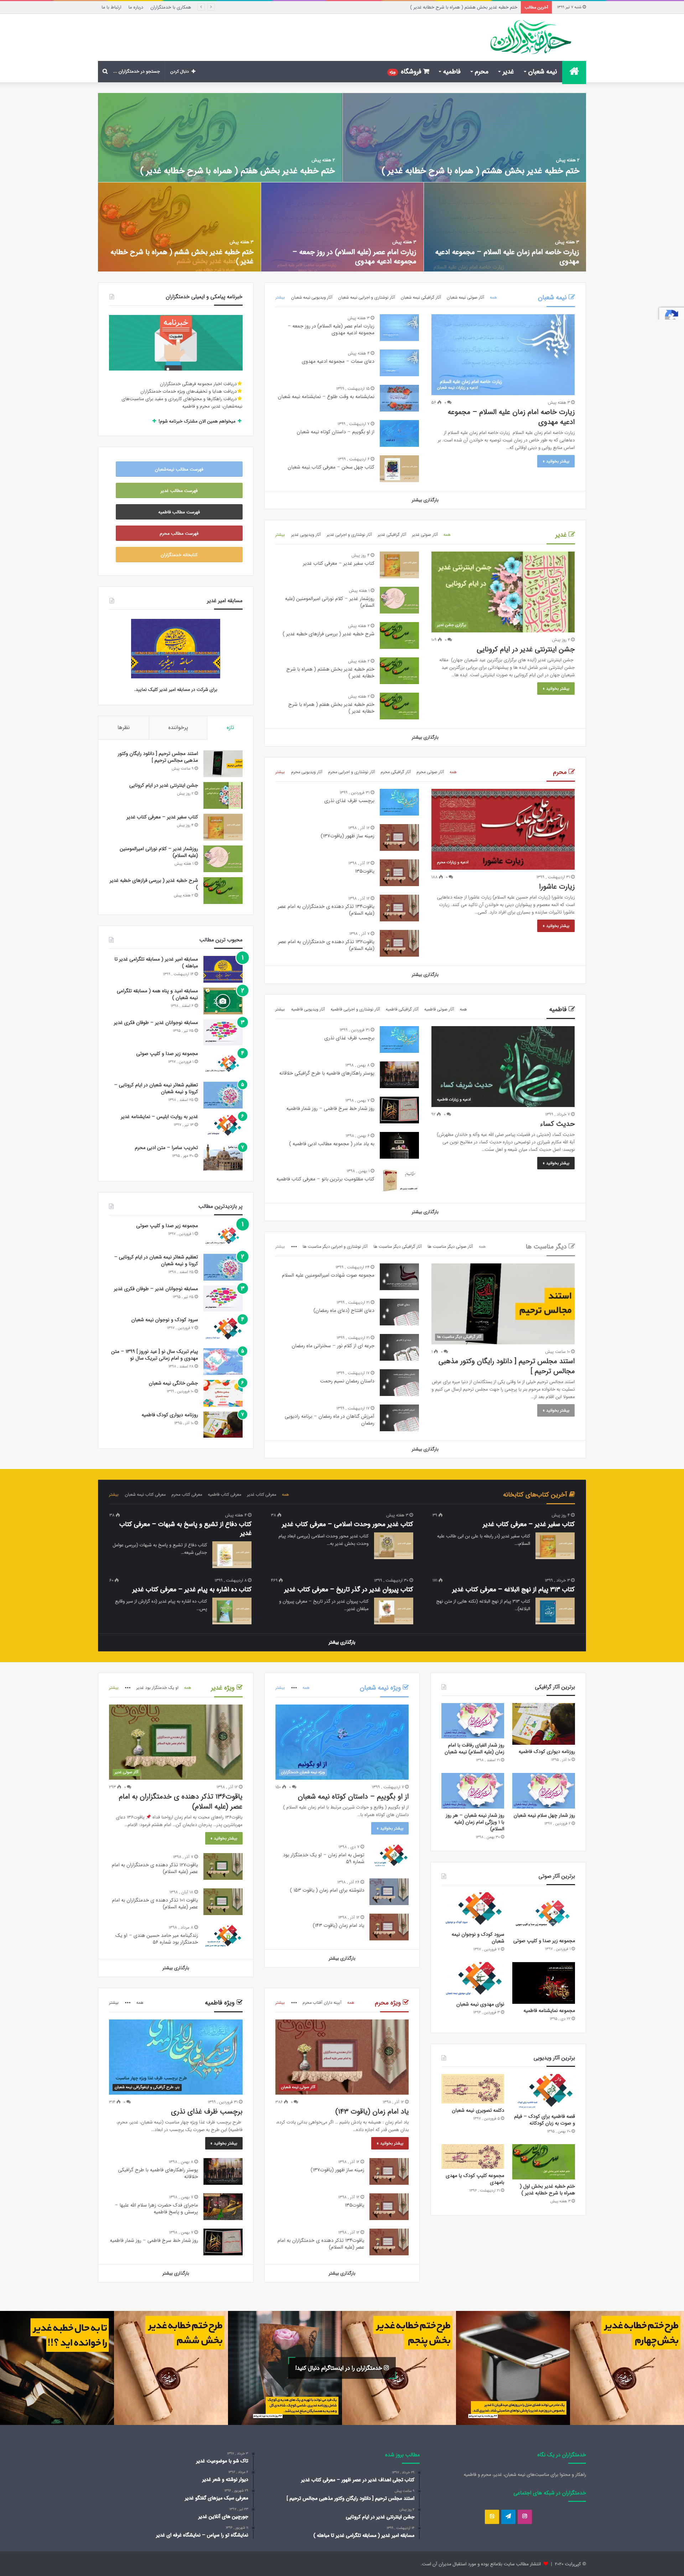 طراحی وب سایت مذهبی فرهنگی خدمتگزاران | طراحی وب سایت